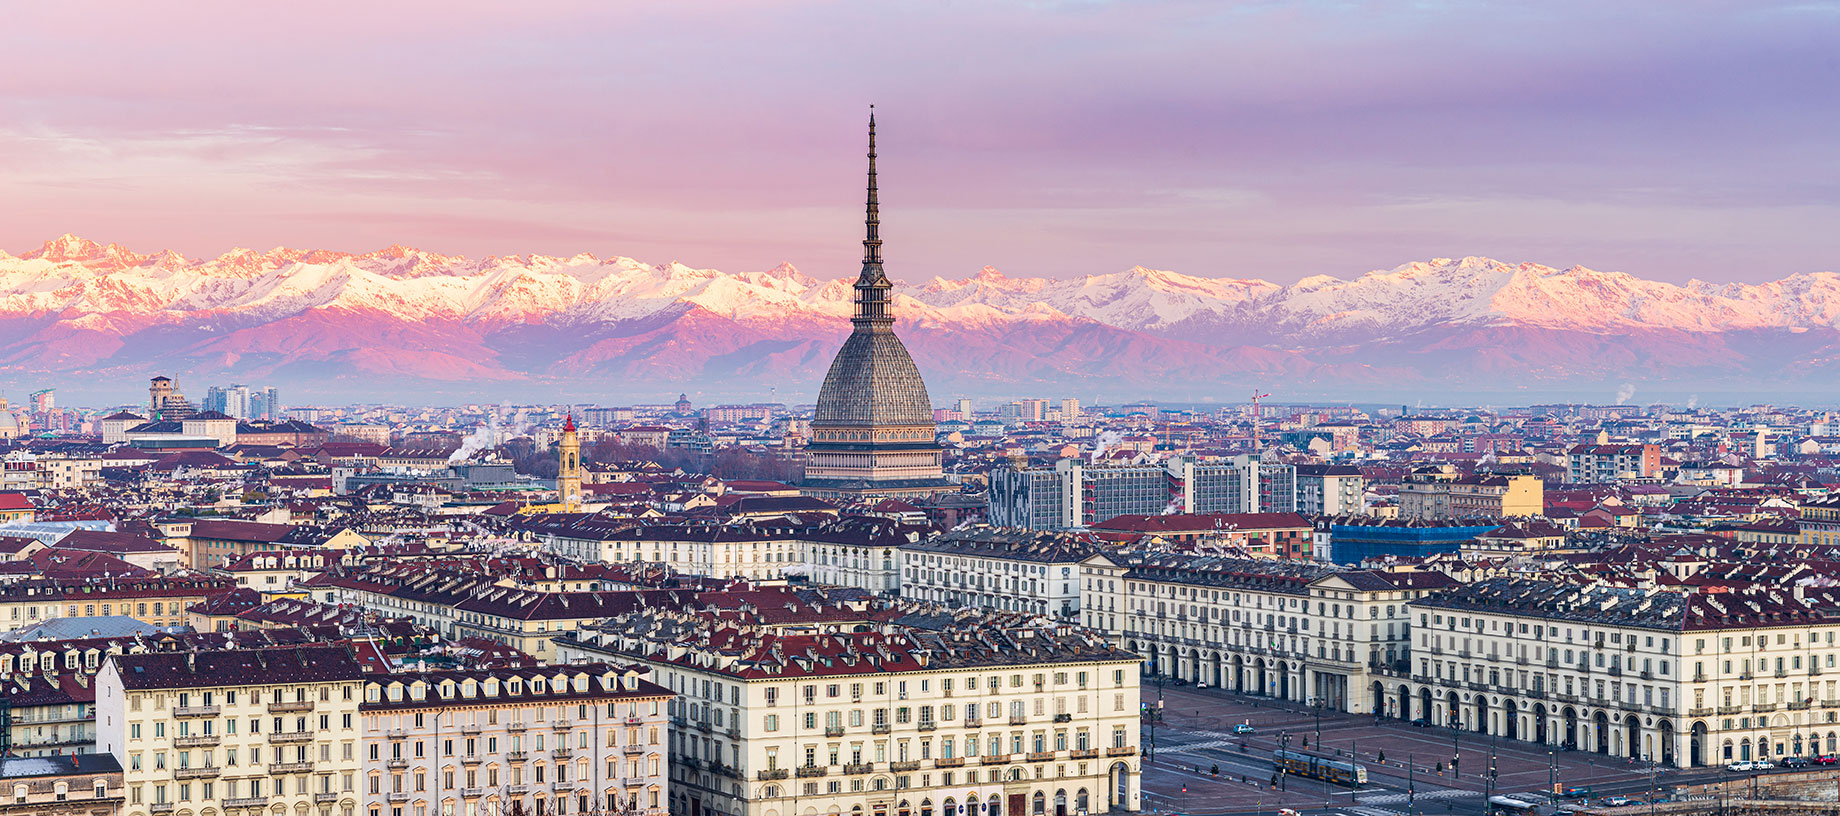 Skyline of Turin, Italy - Mole Antonelliana